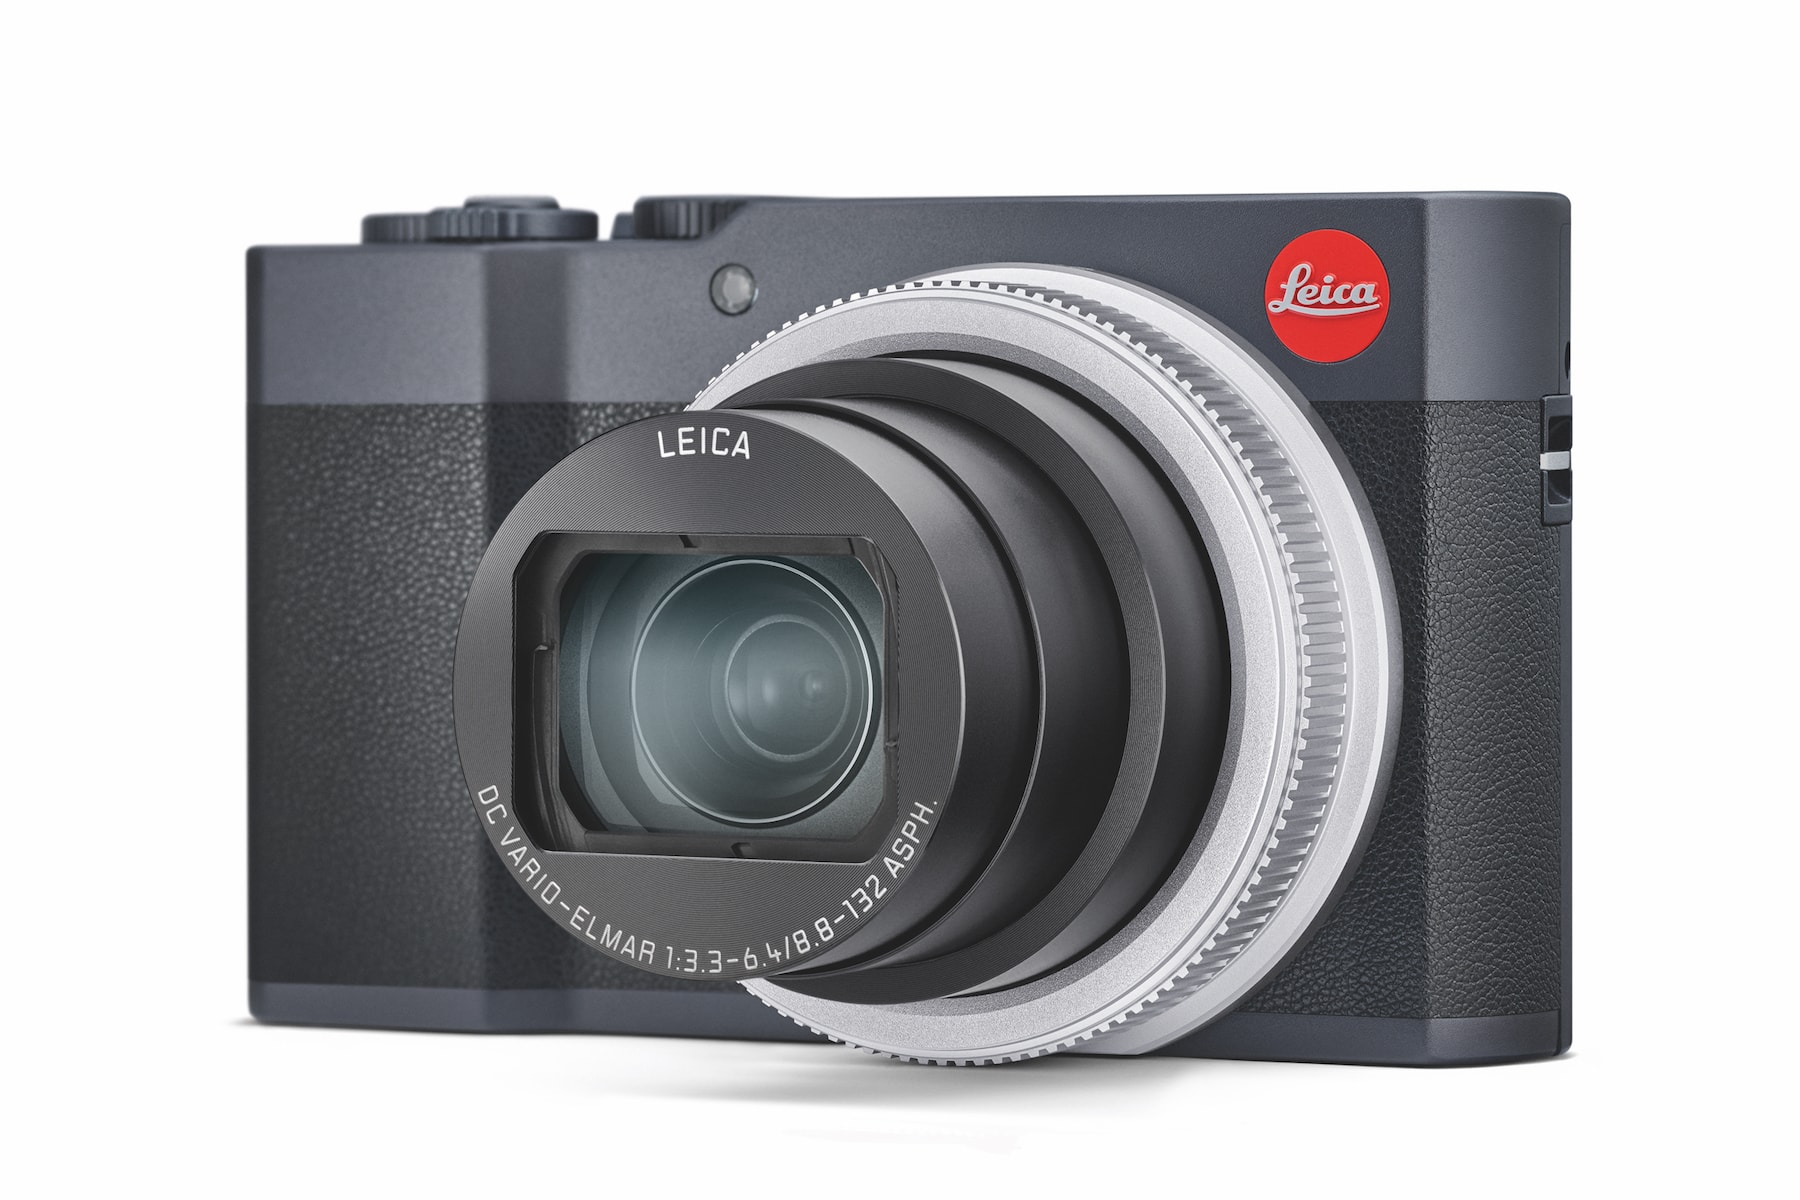 Leica 最新 C-Lux 15 倍光學變焦便擕式相機登場